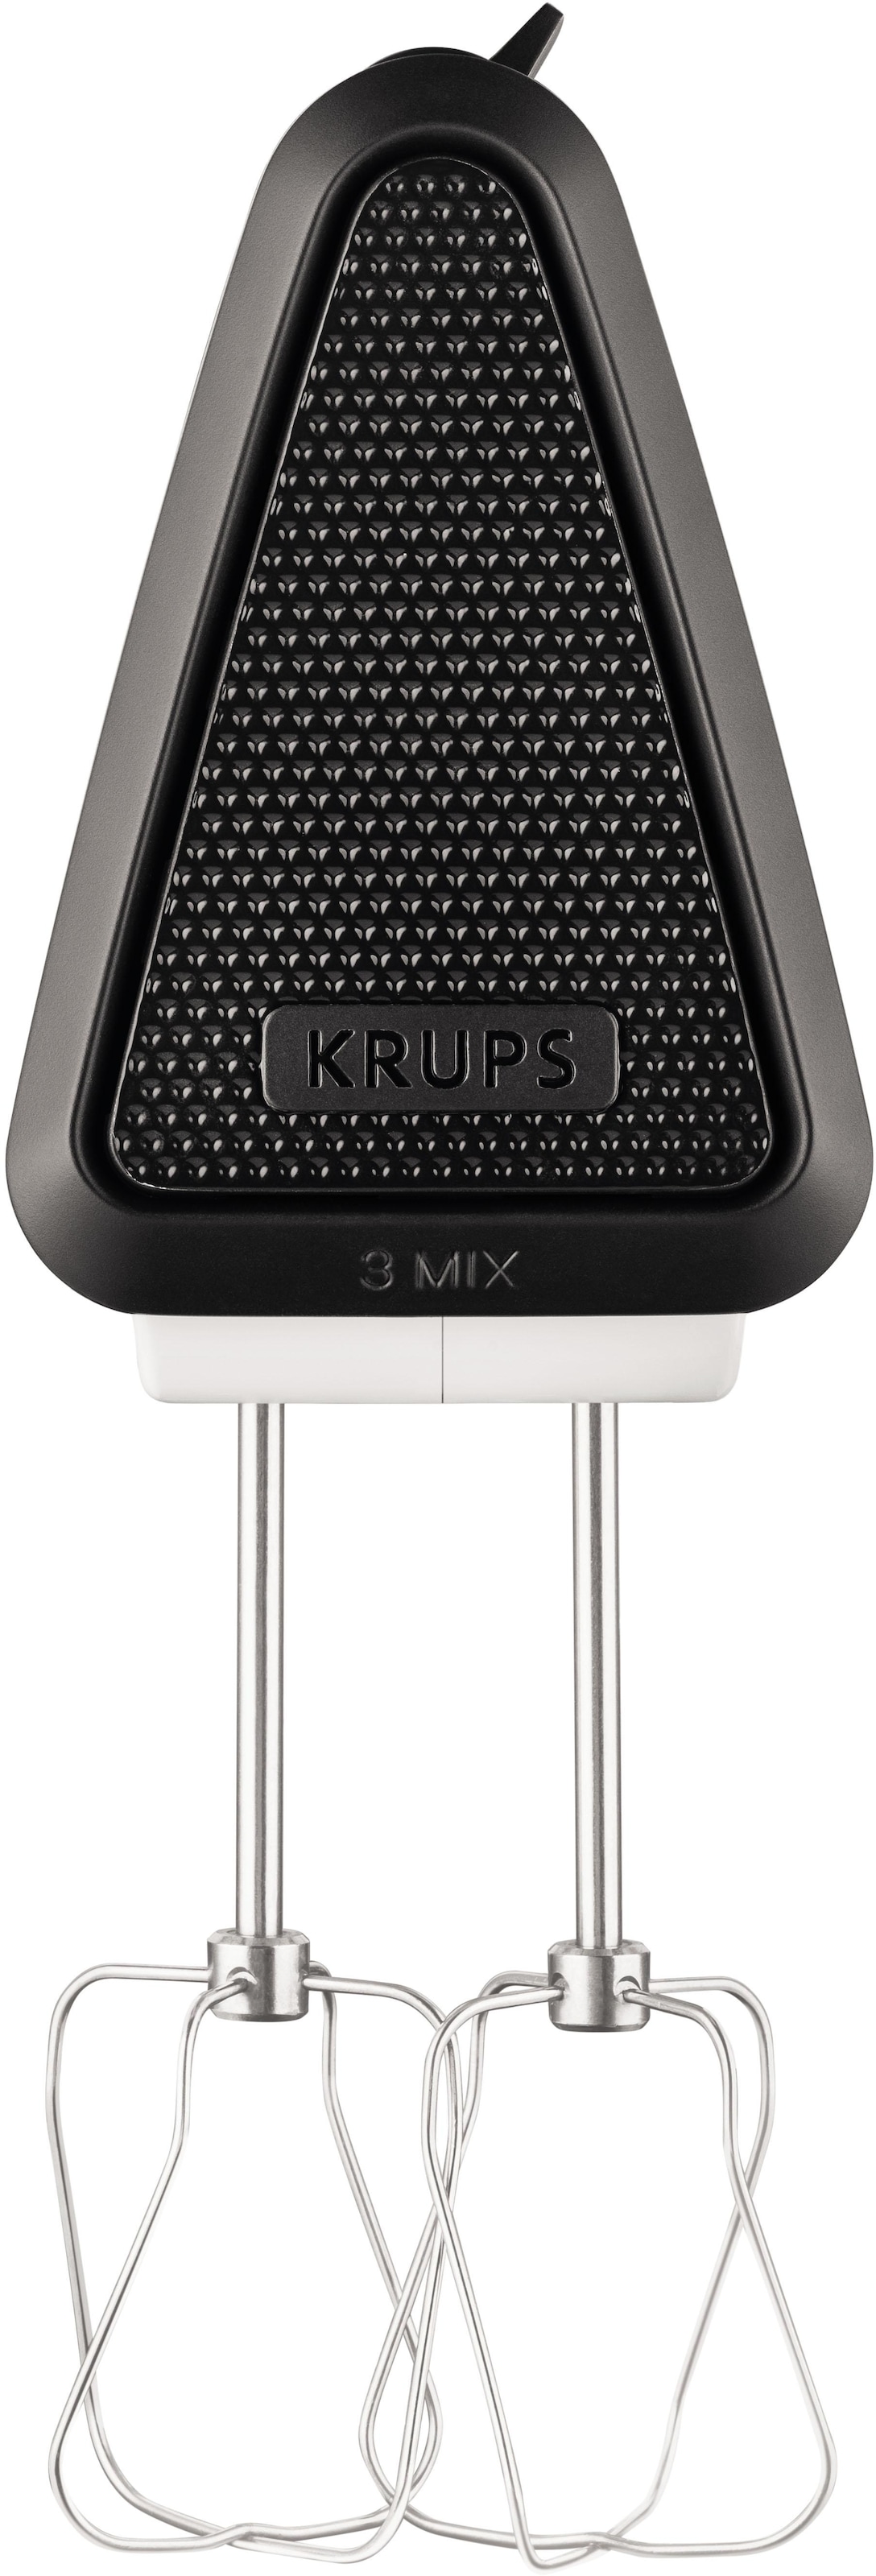 Krups Handmixer »GN5021 3 Mix«, 500 W, 5 Geschwindigkeiten, inkl. Rührbesen  und Knethaken aus Edelstahl jetzt kaufen bei OTTO